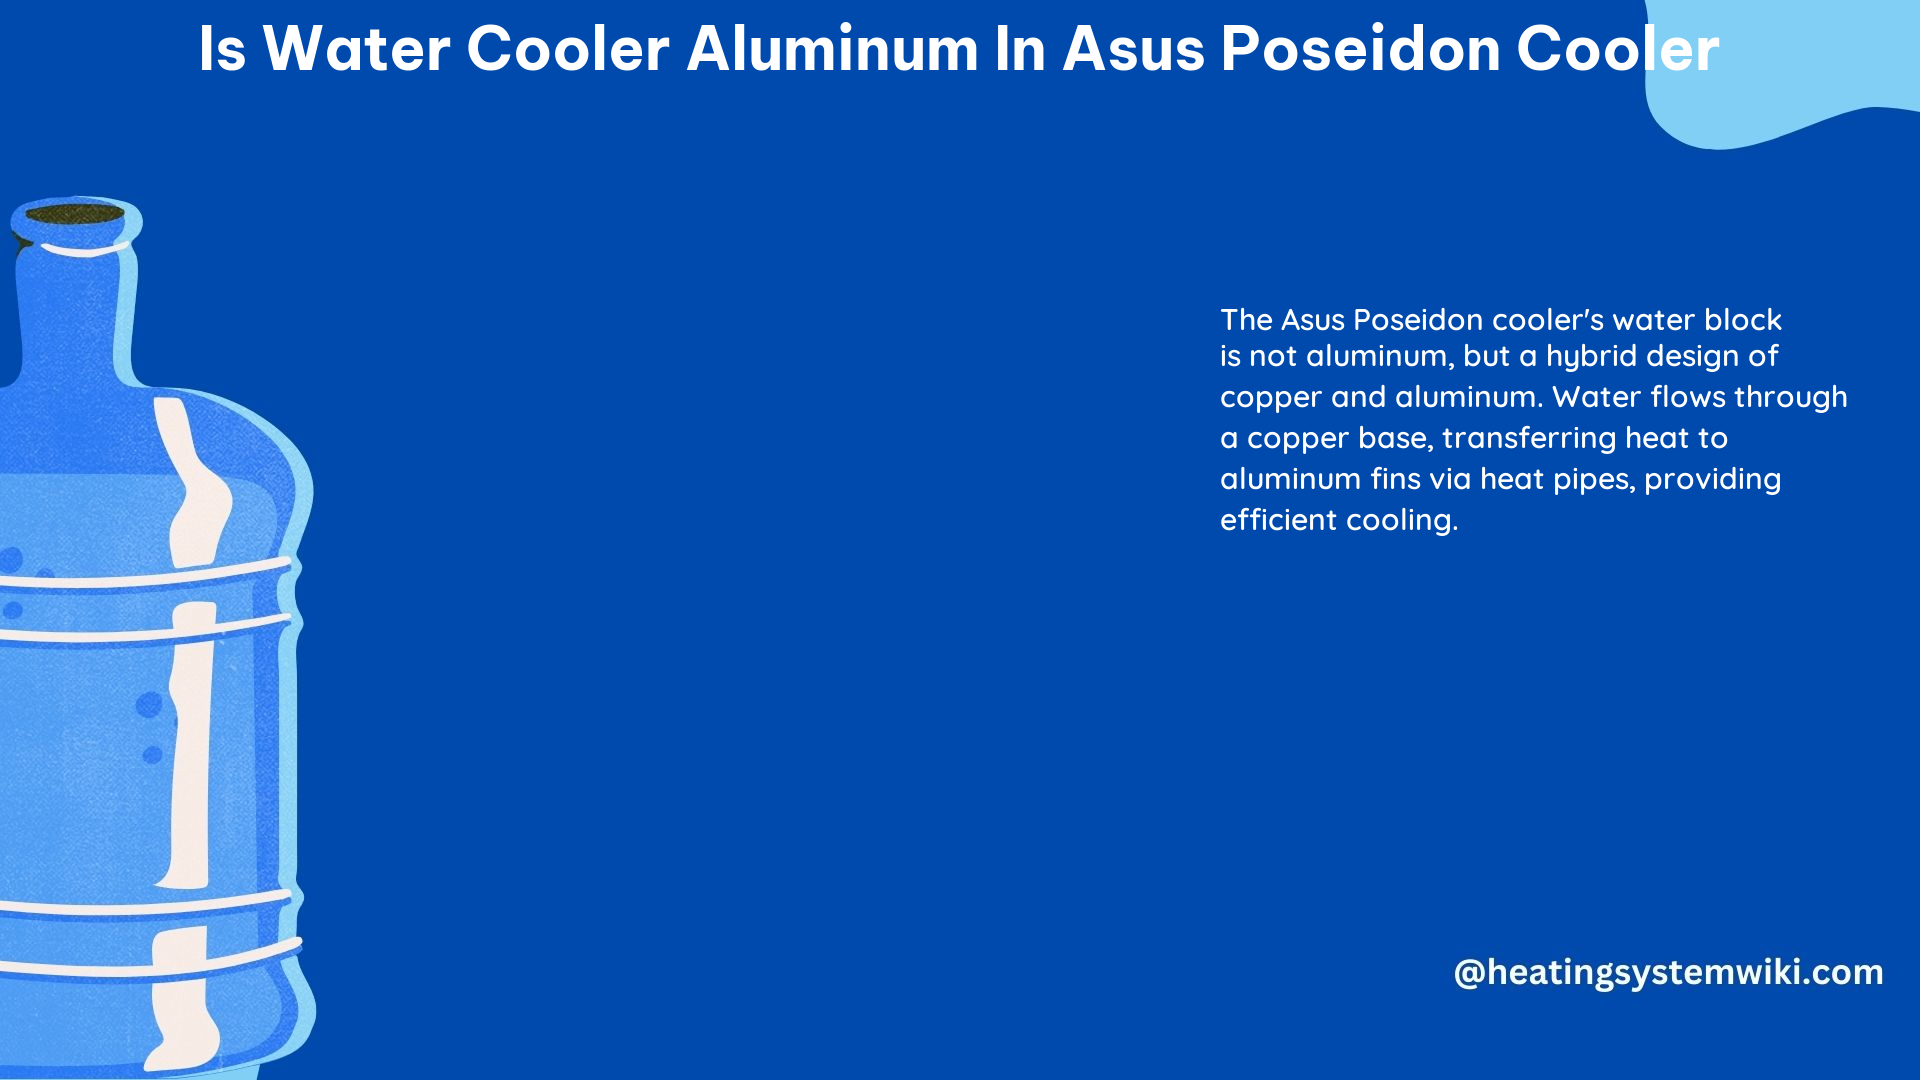 Is Water Cooler Aluminum in Asus Poseidon Cooler